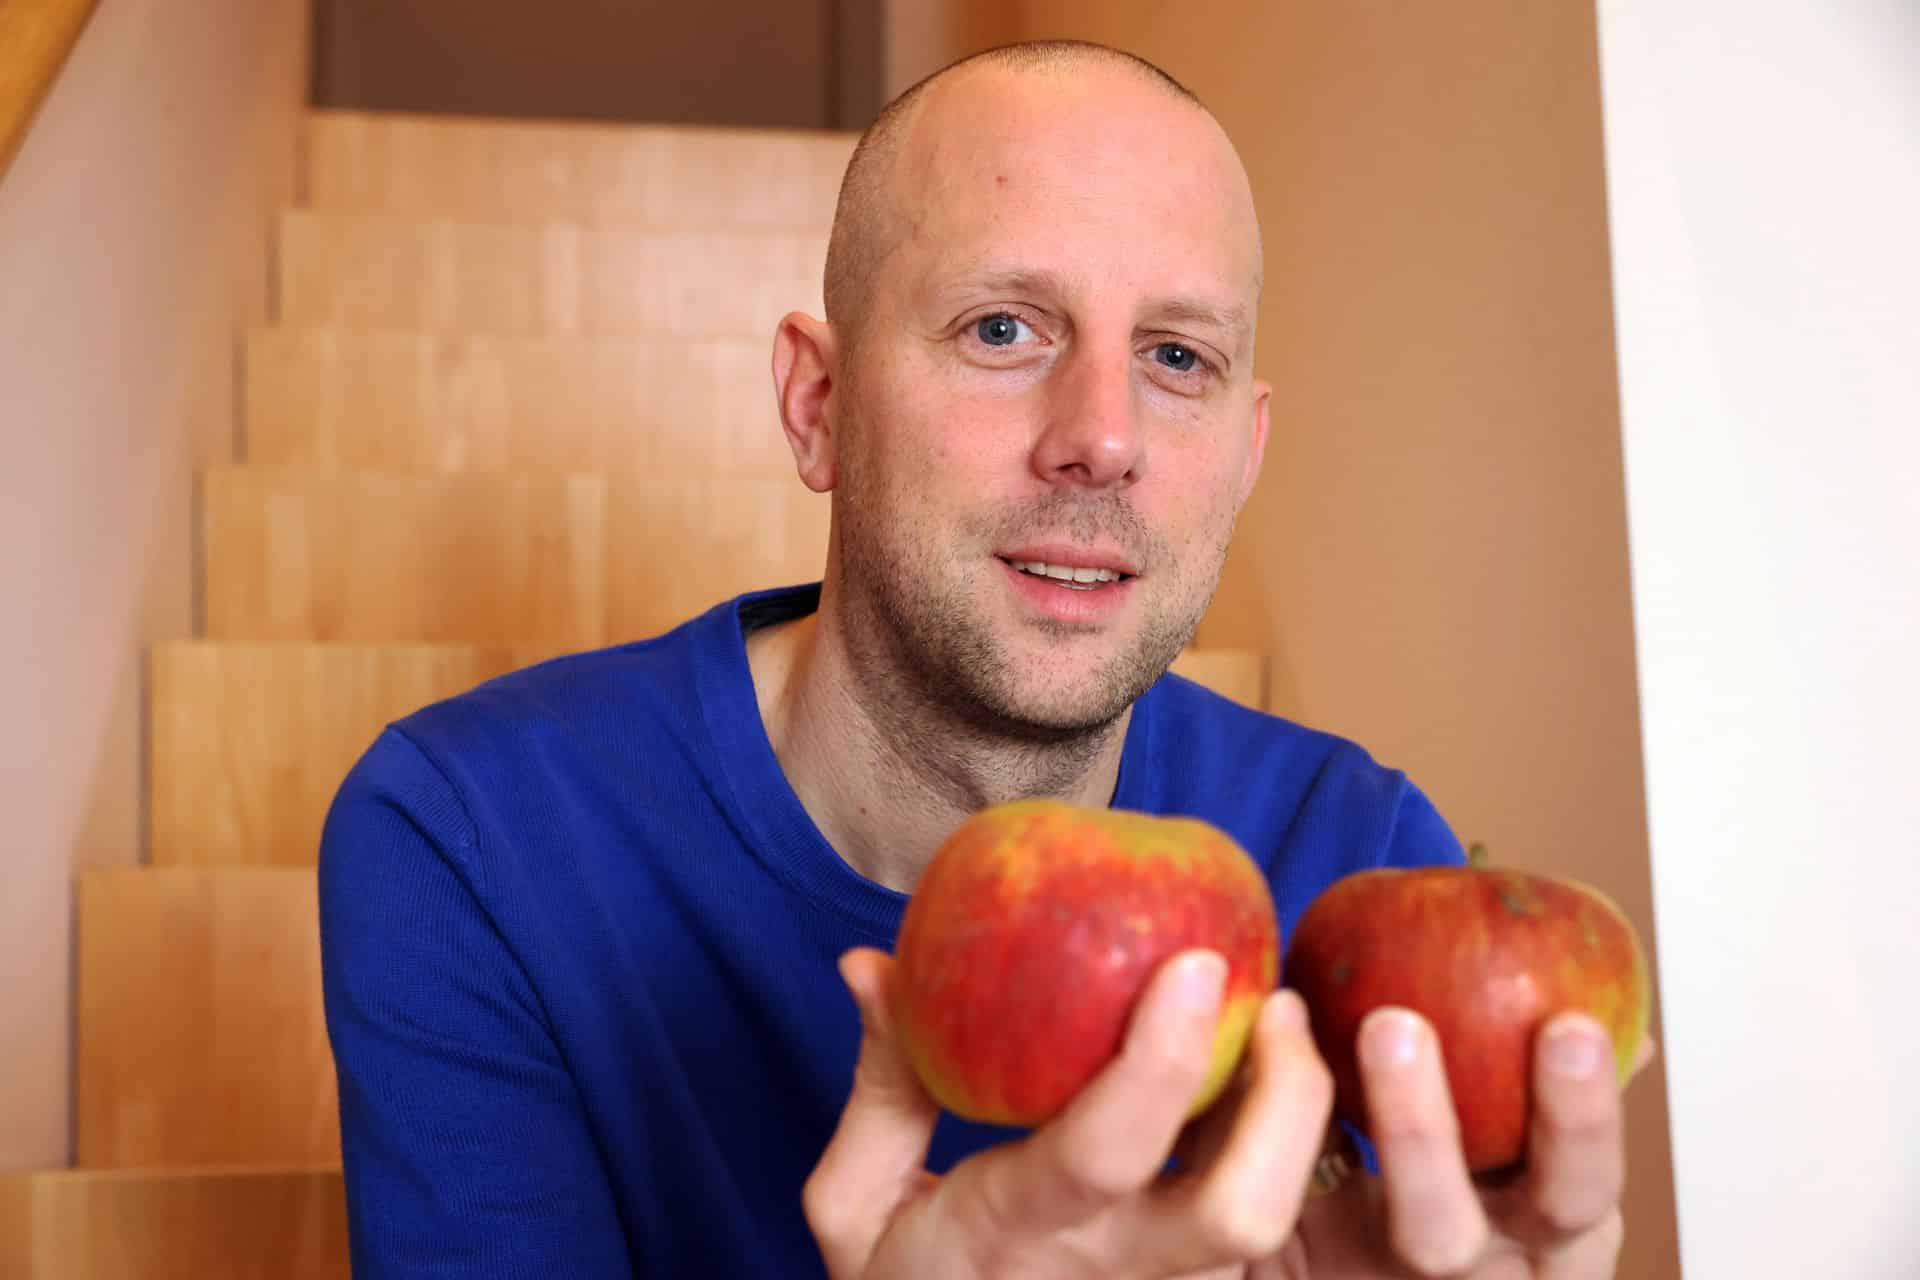 Voedingspsycholoog Michaël Bloemen over de relatie tussen voeding en geluk